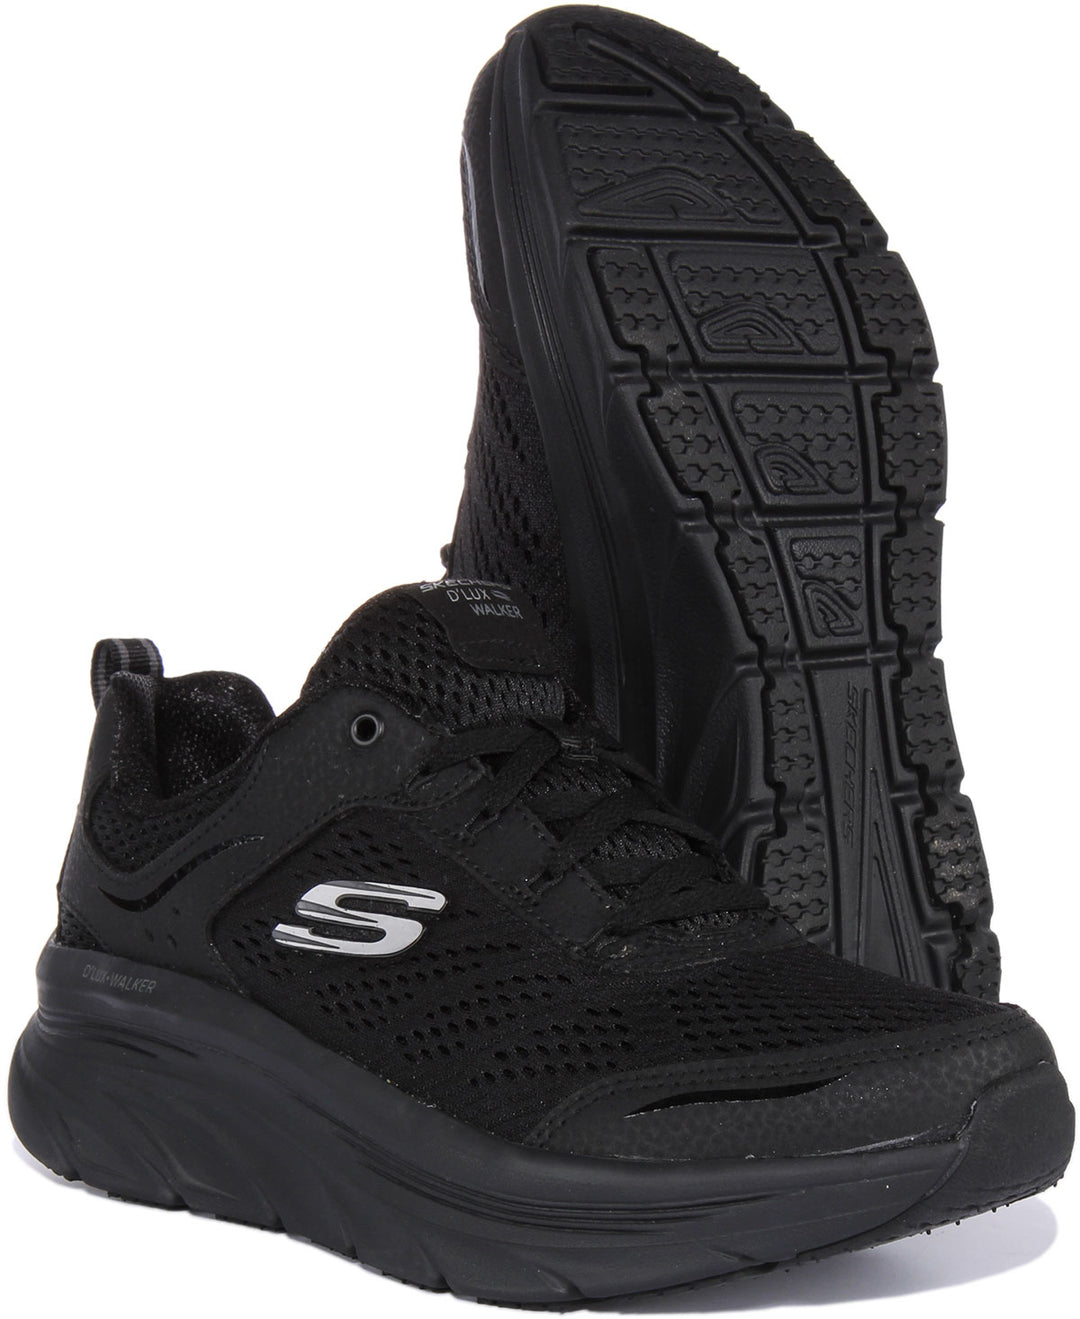 Skechers Relaxed Fit D'Lux WalkerInfinite Motion Zapatillas de malla con cordones para mujer en todo negro